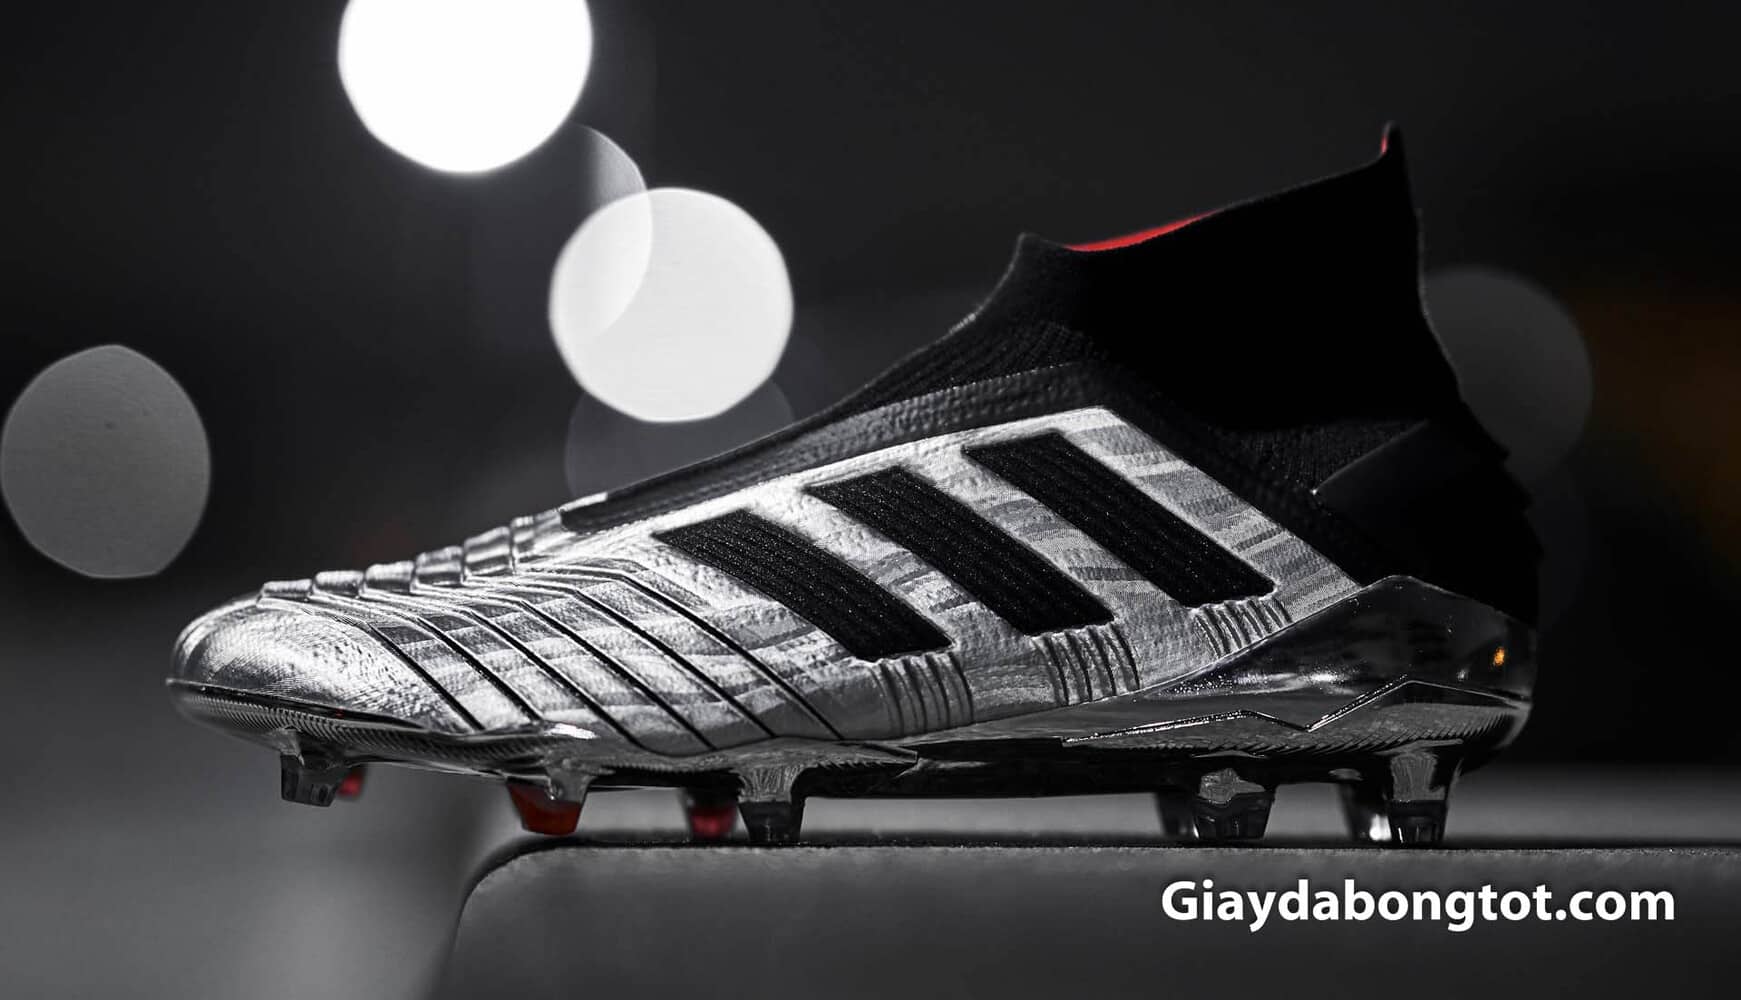 Giày đá banh Adidas Predator 19 được ra mắt với màu bạc phối đen cực kỳ độc đáo